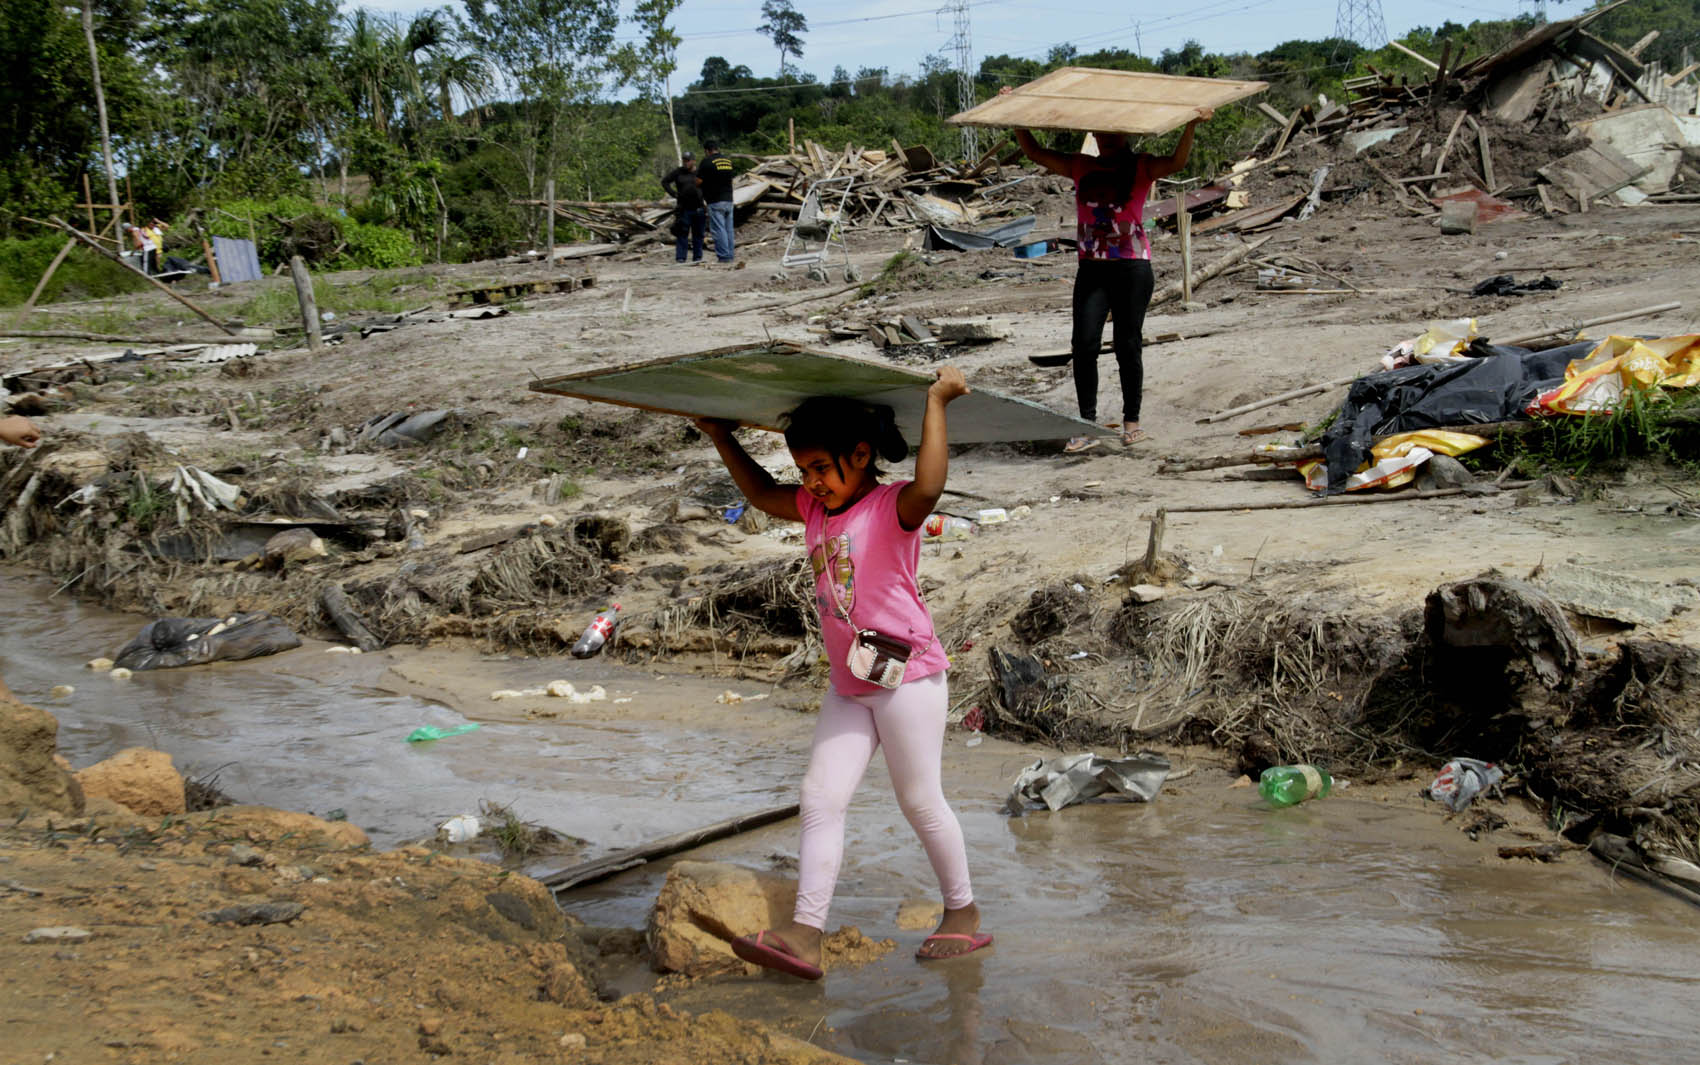 Menina carrega pedaços de um barraco depois da reintegração de posse em um terreno invadido na zona norte de Manaus nesta segunda (25). Cerca de três mil famílias foram retiradas do local conhecido como 'Comunidade Nobre'.